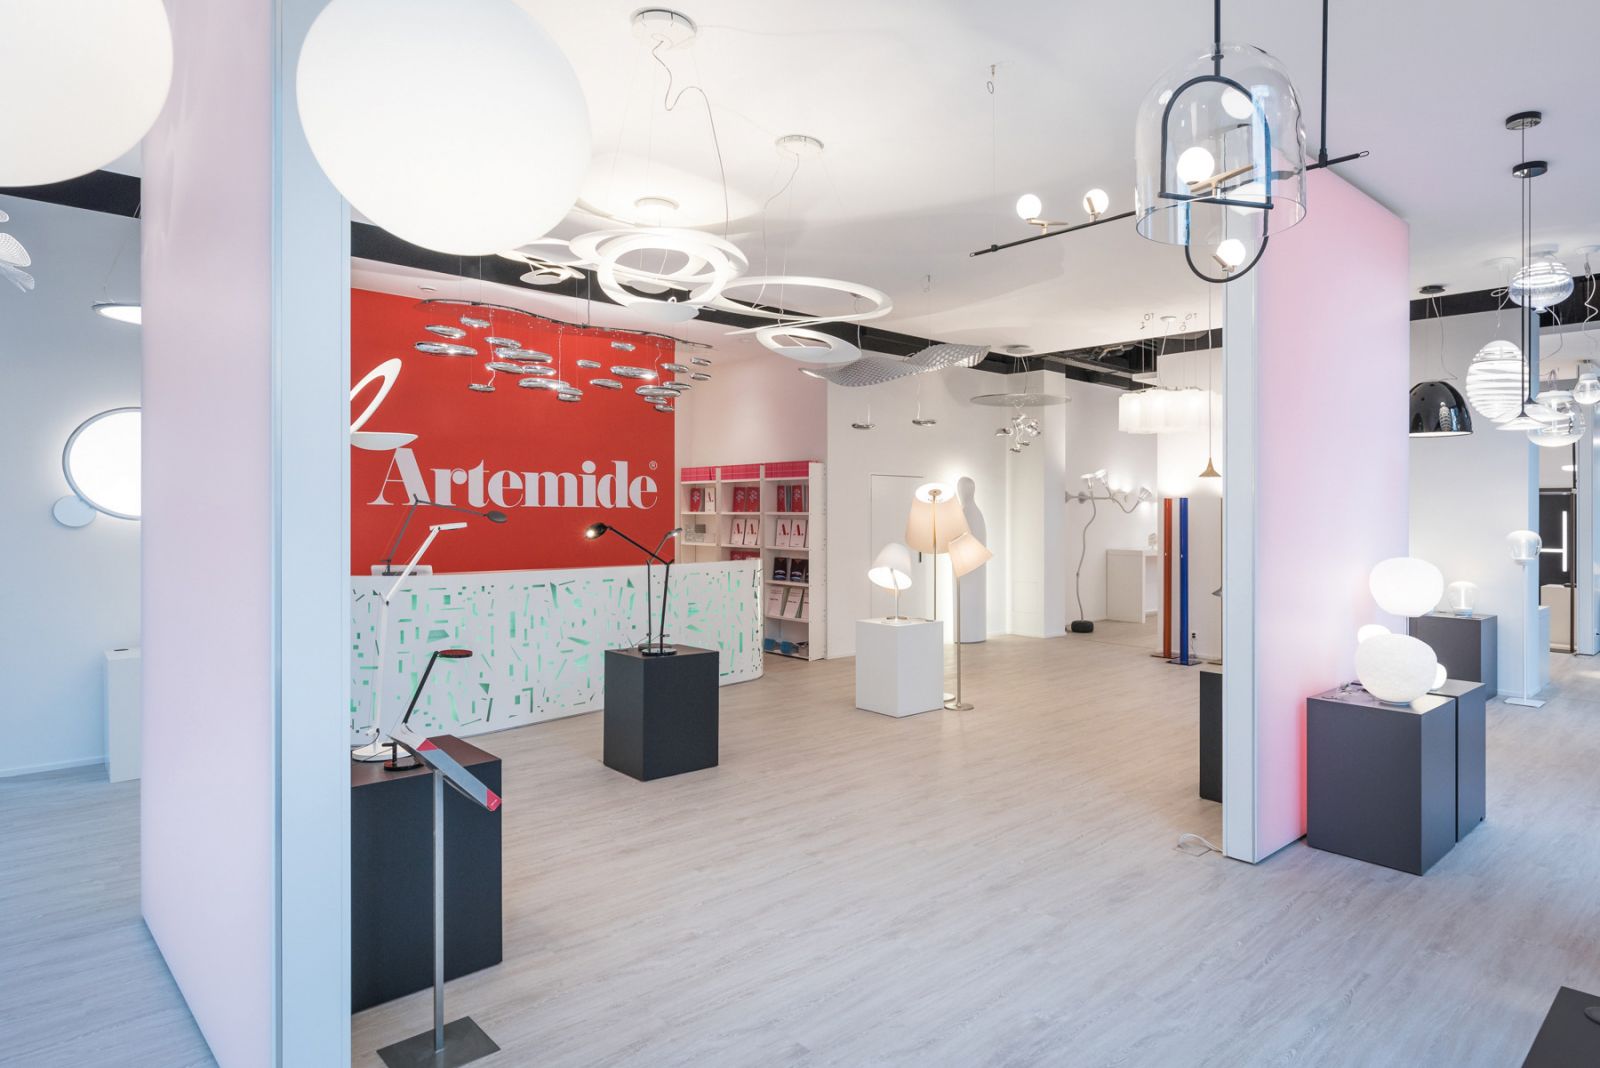 Die Leuchten des italienischen Herstellers Artemide sind im Kompetenzzentrum in Zürich ins rechte Licht gerückt.